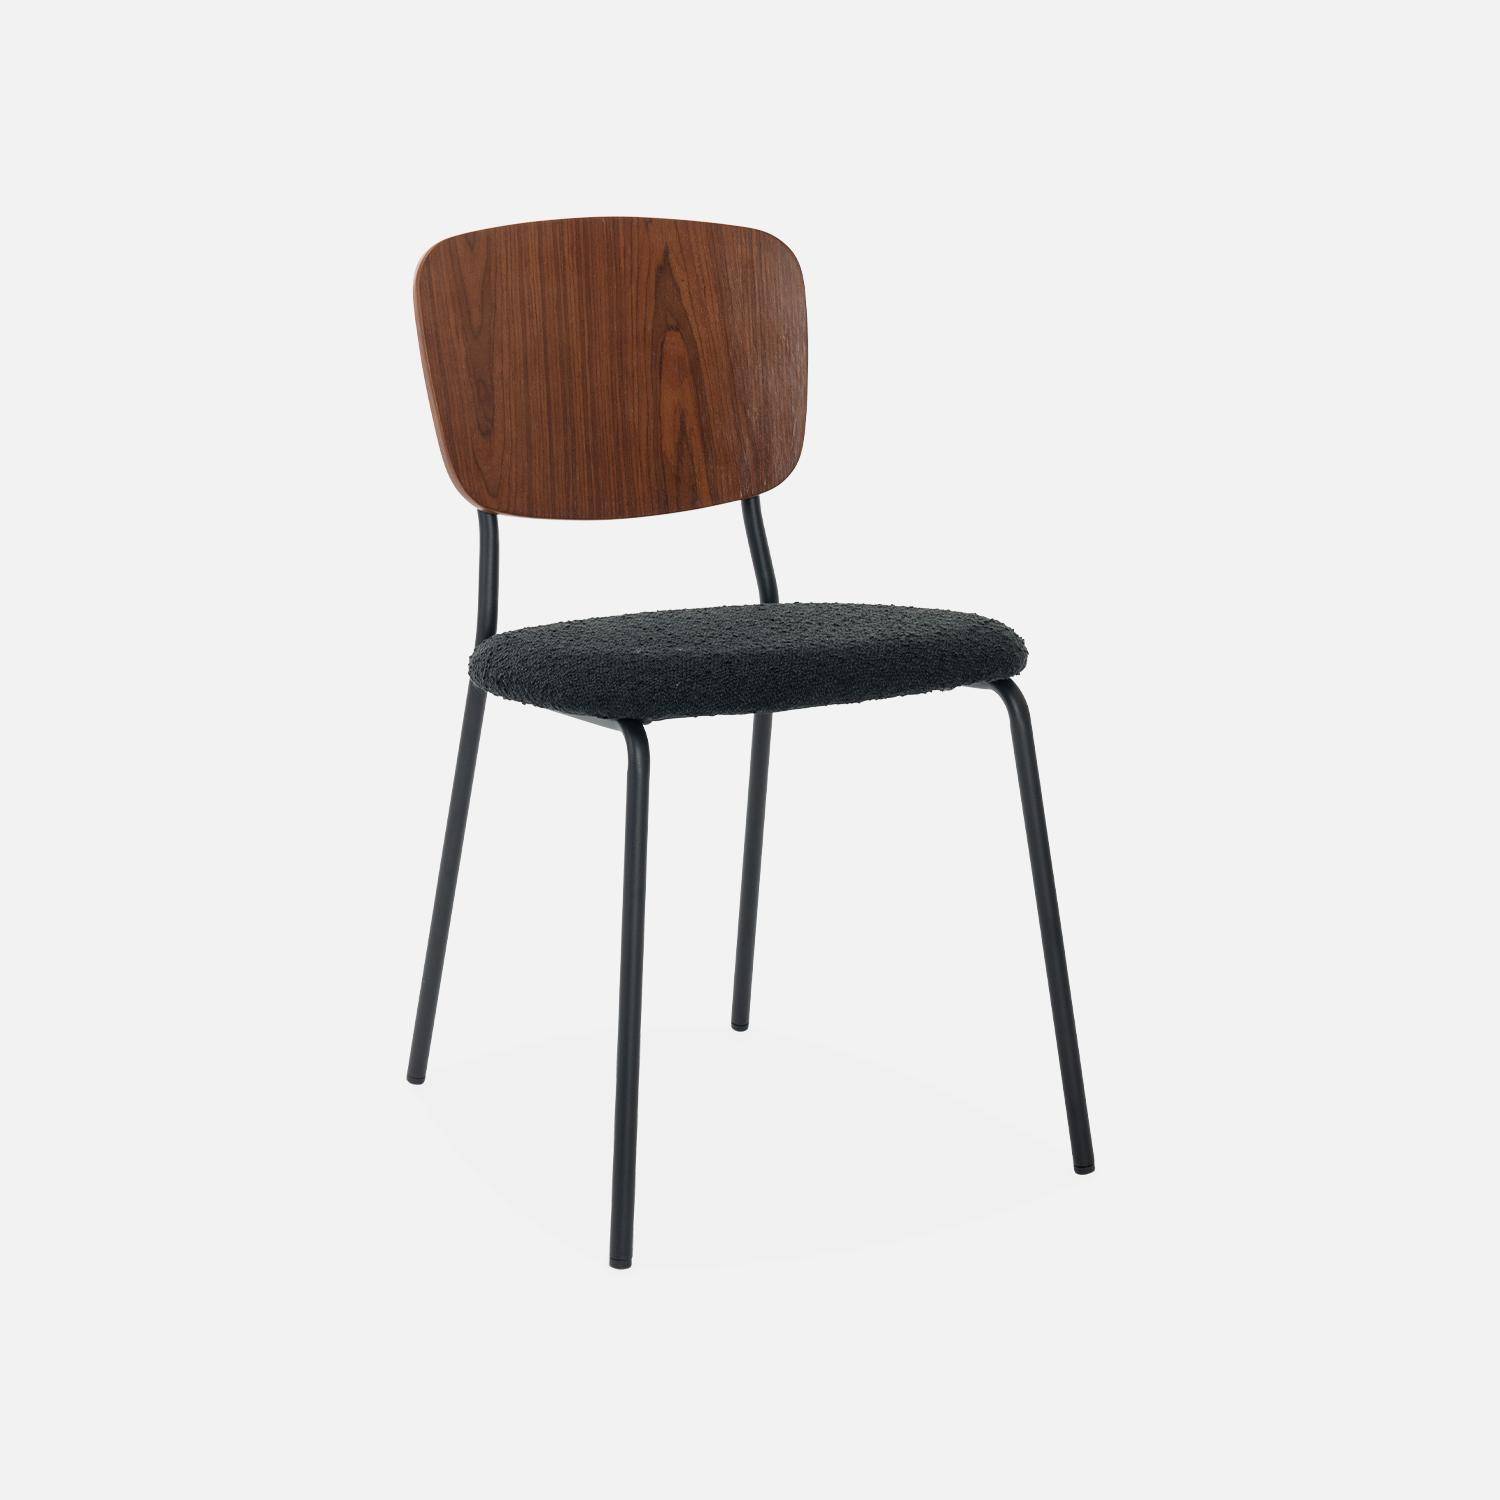 2er Set Stühle mit strukturiertem Bouclé-Sitz in schwarz, Rückenlehne aus gebogenem Pappelholz, Beine aus mattschwarzem Metall Photo4